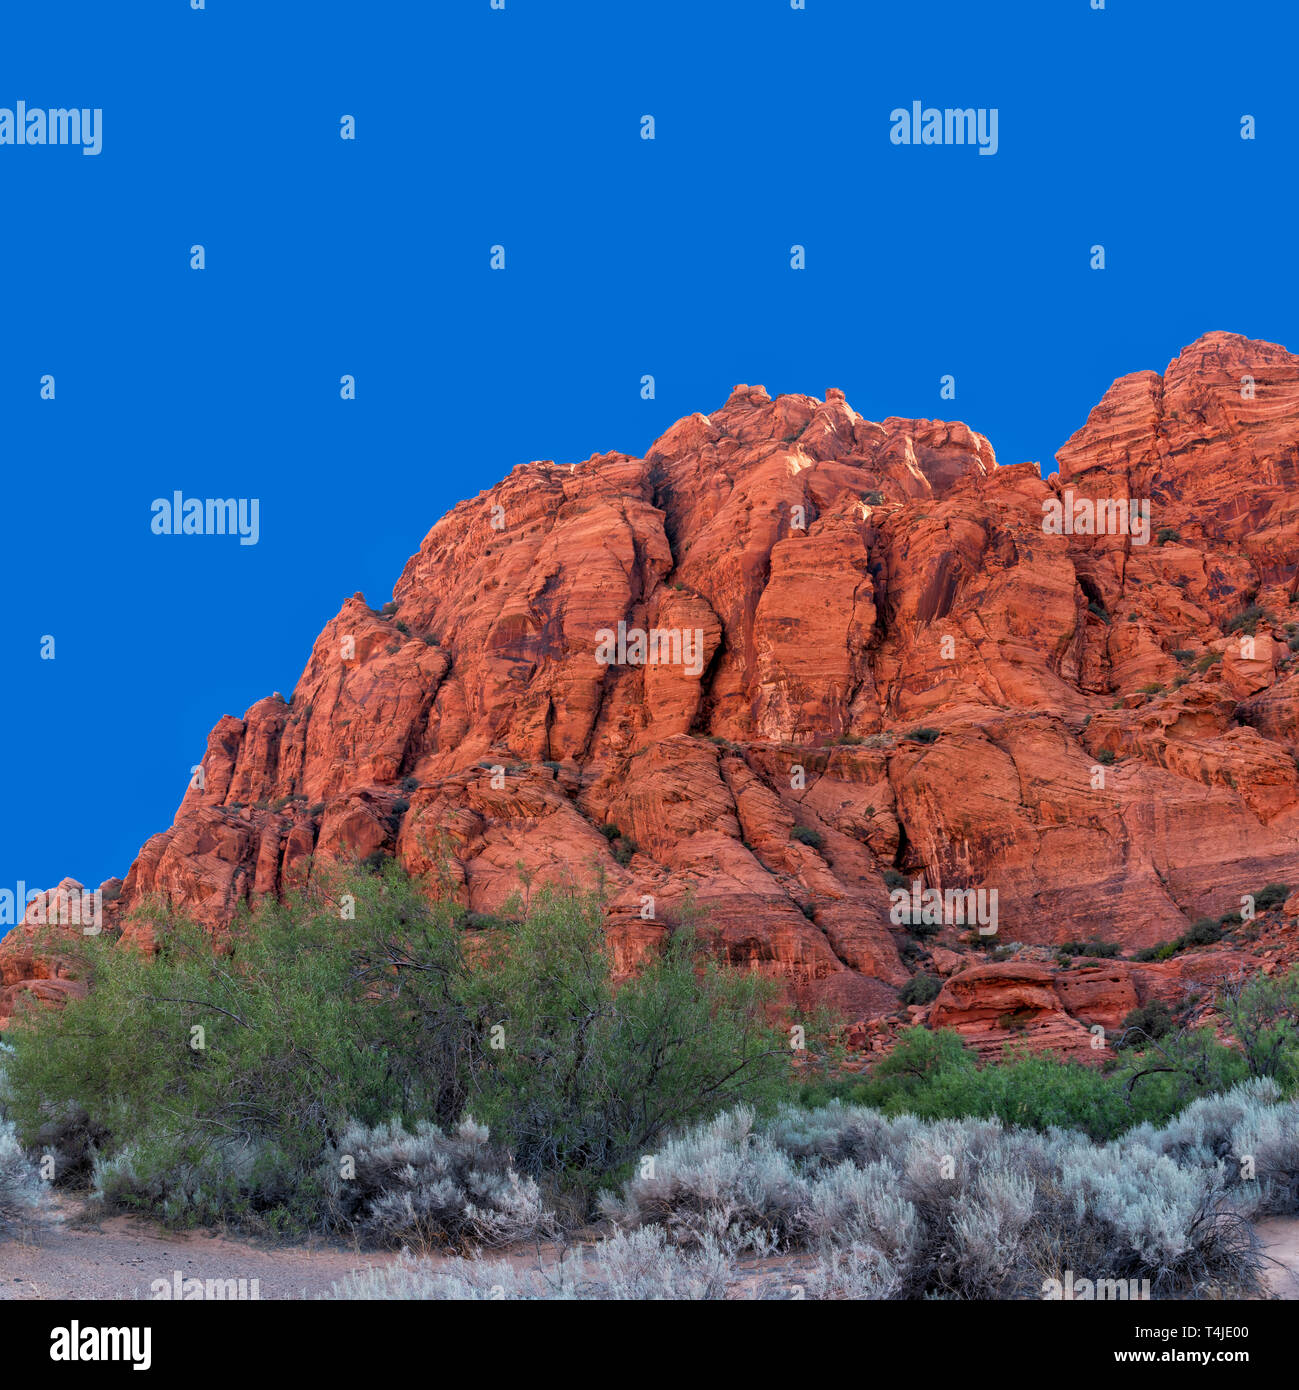 Spazzola di salvia e il verde degli alberi del deserto con Arancione rossastro ruvida sterile montagna rocciosa sotto il luminoso cielo blu. Foto Stock